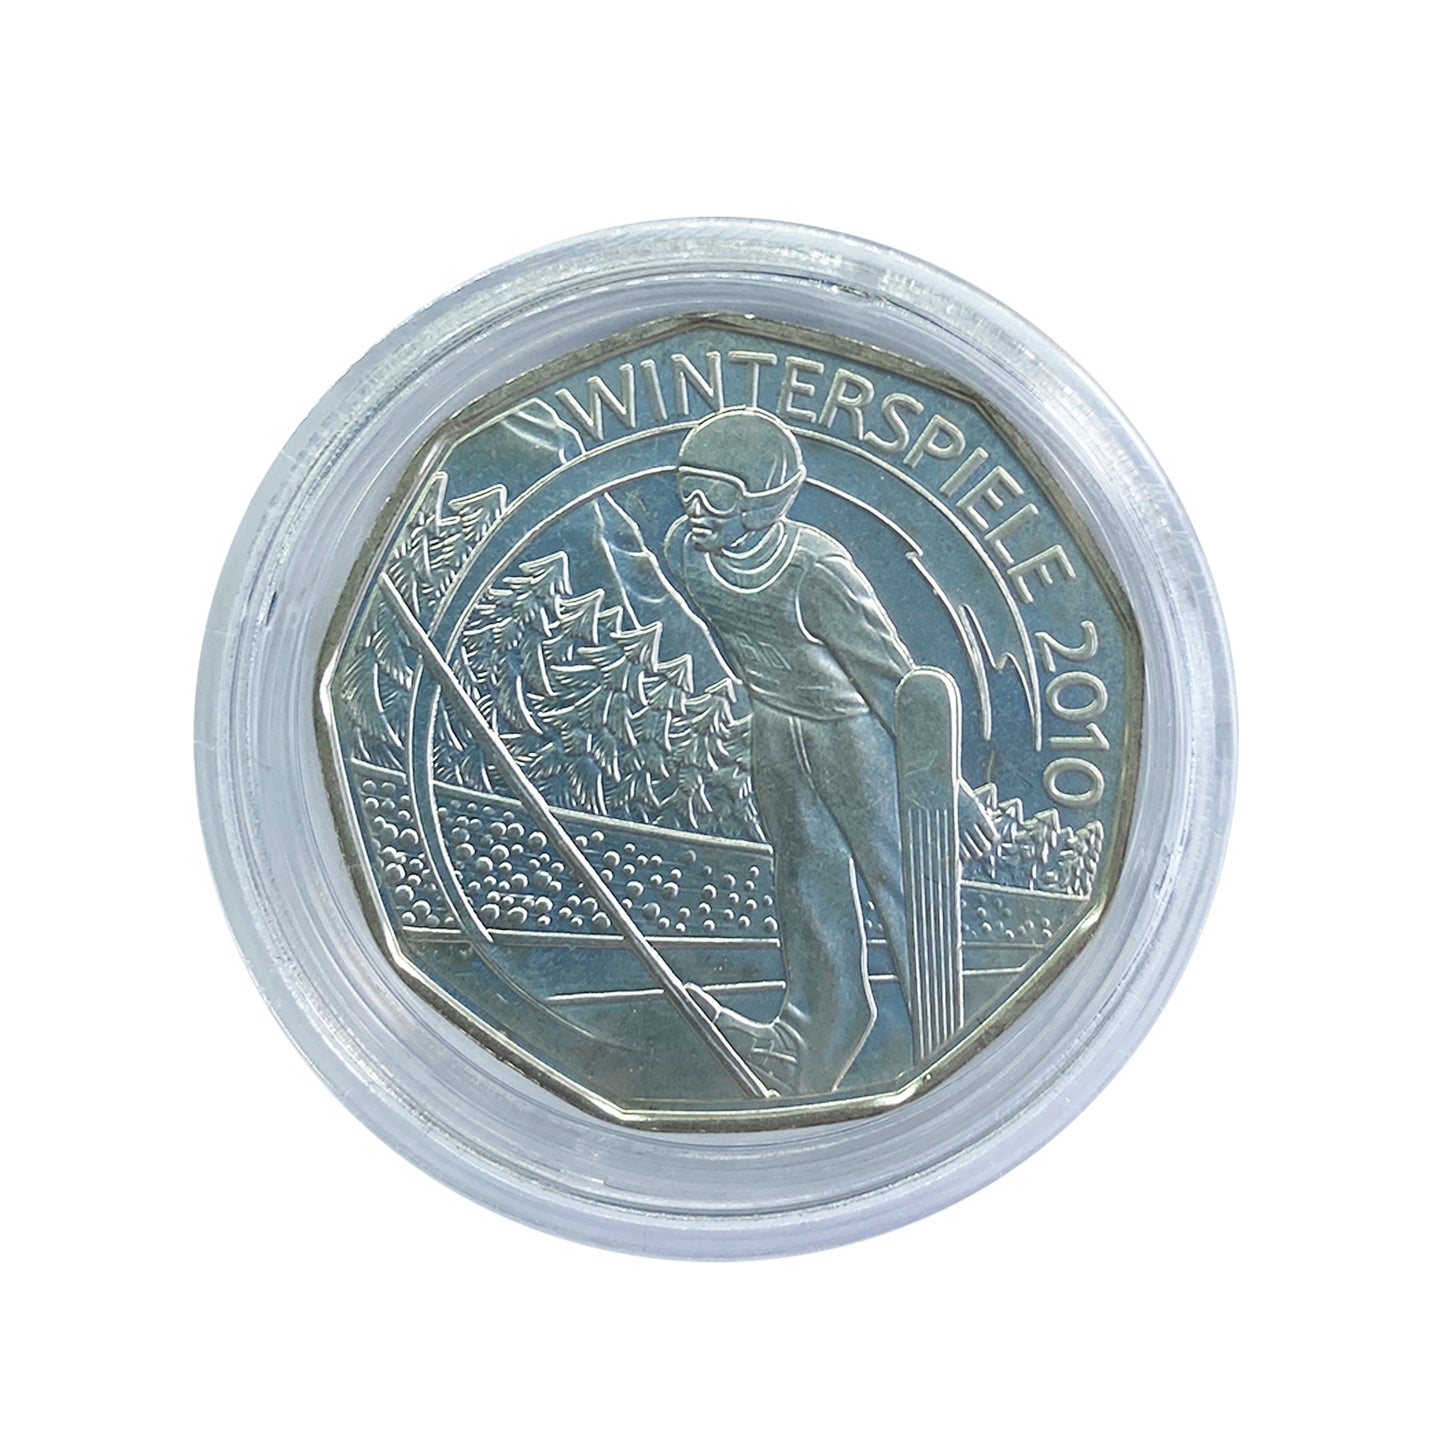 Austria - Moneda 5 euros plata 2010 - Juegos de Olímpicos de Invierno 2010 - Saltos de Esquí